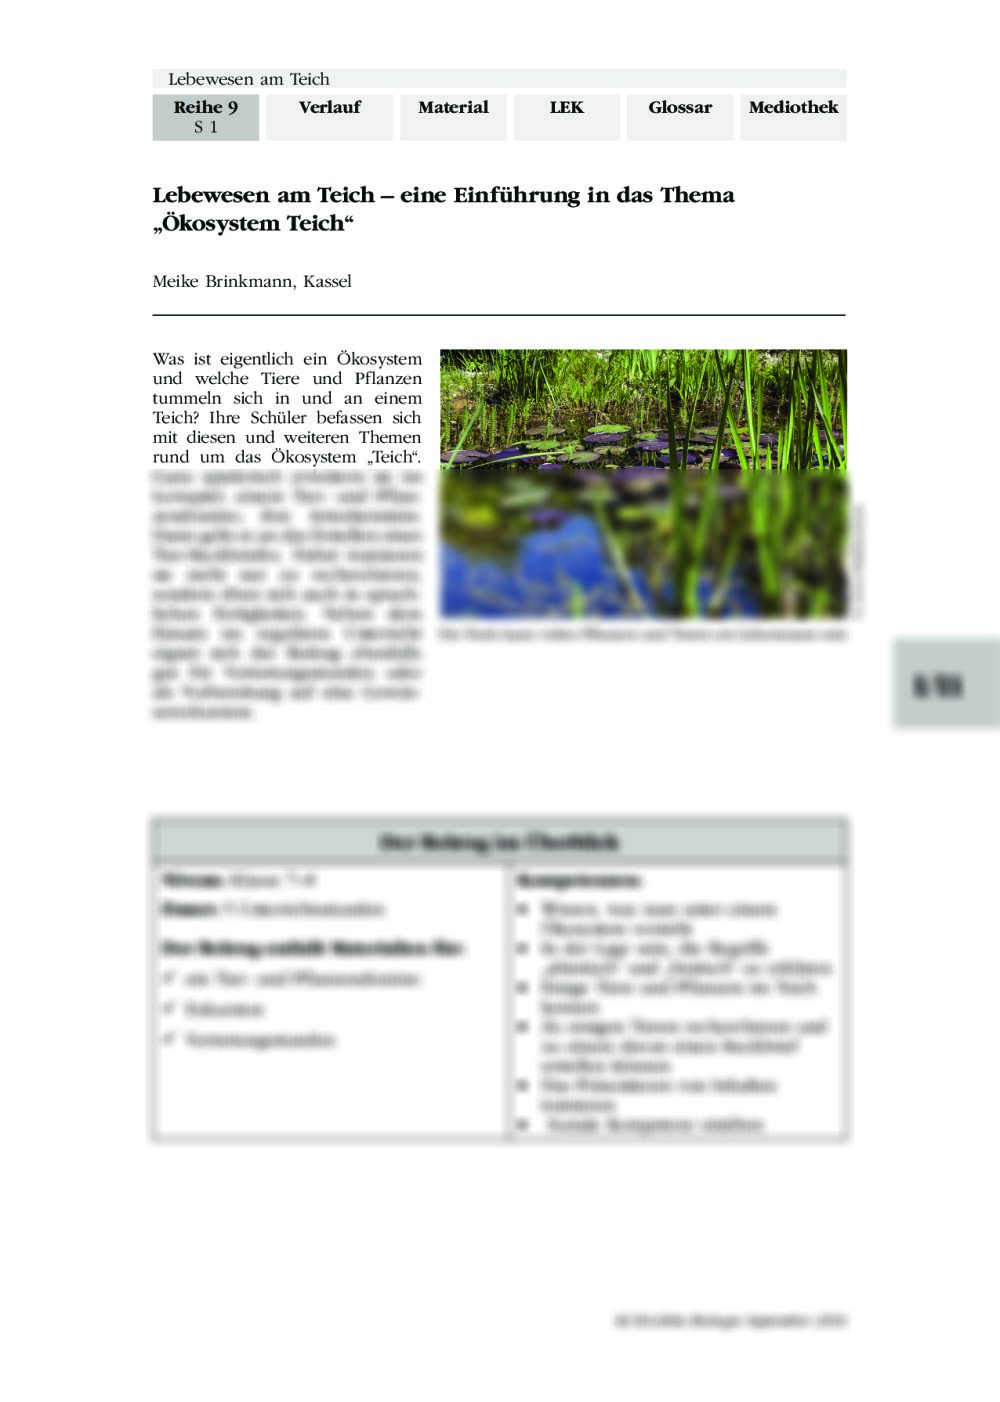 Einführung in das Thema "Ökosystem Teich" - Seite 1